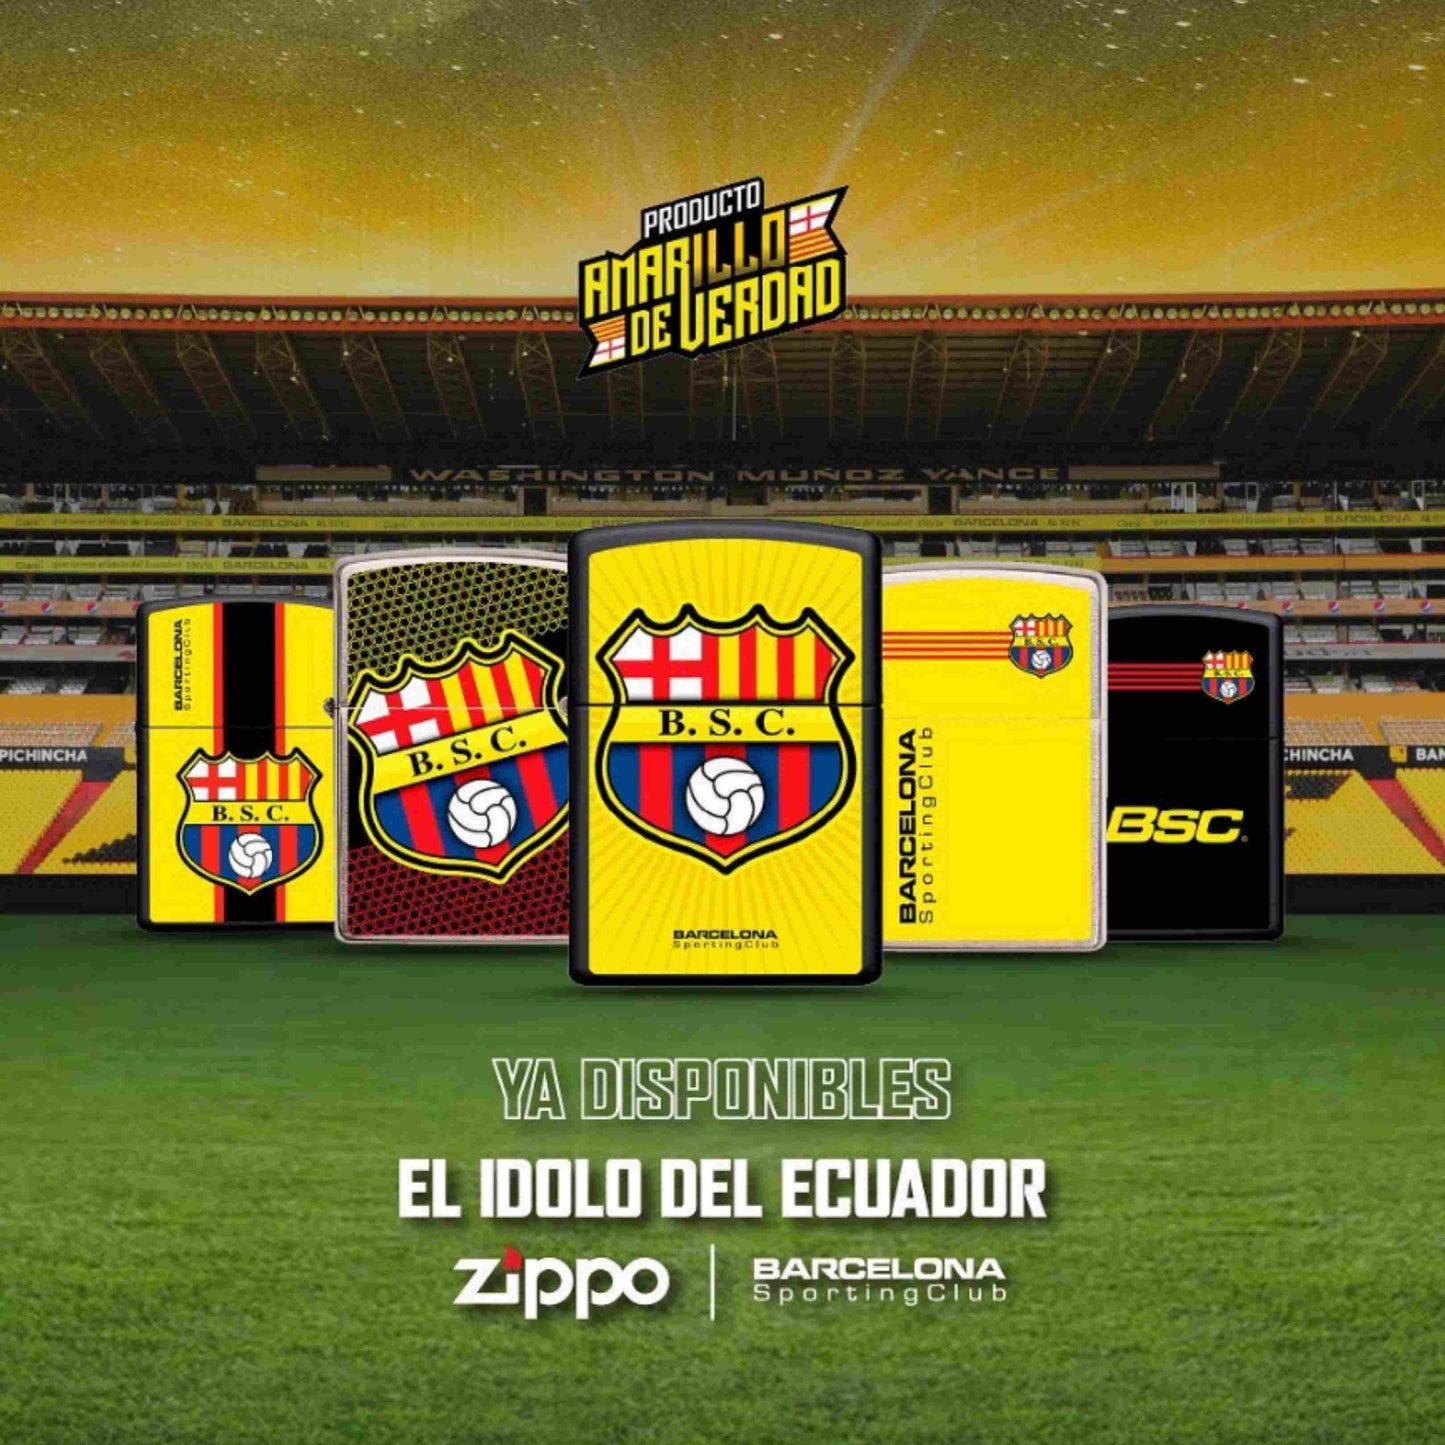 Zippo Lighter Barcelona Sporting Club Ecuador